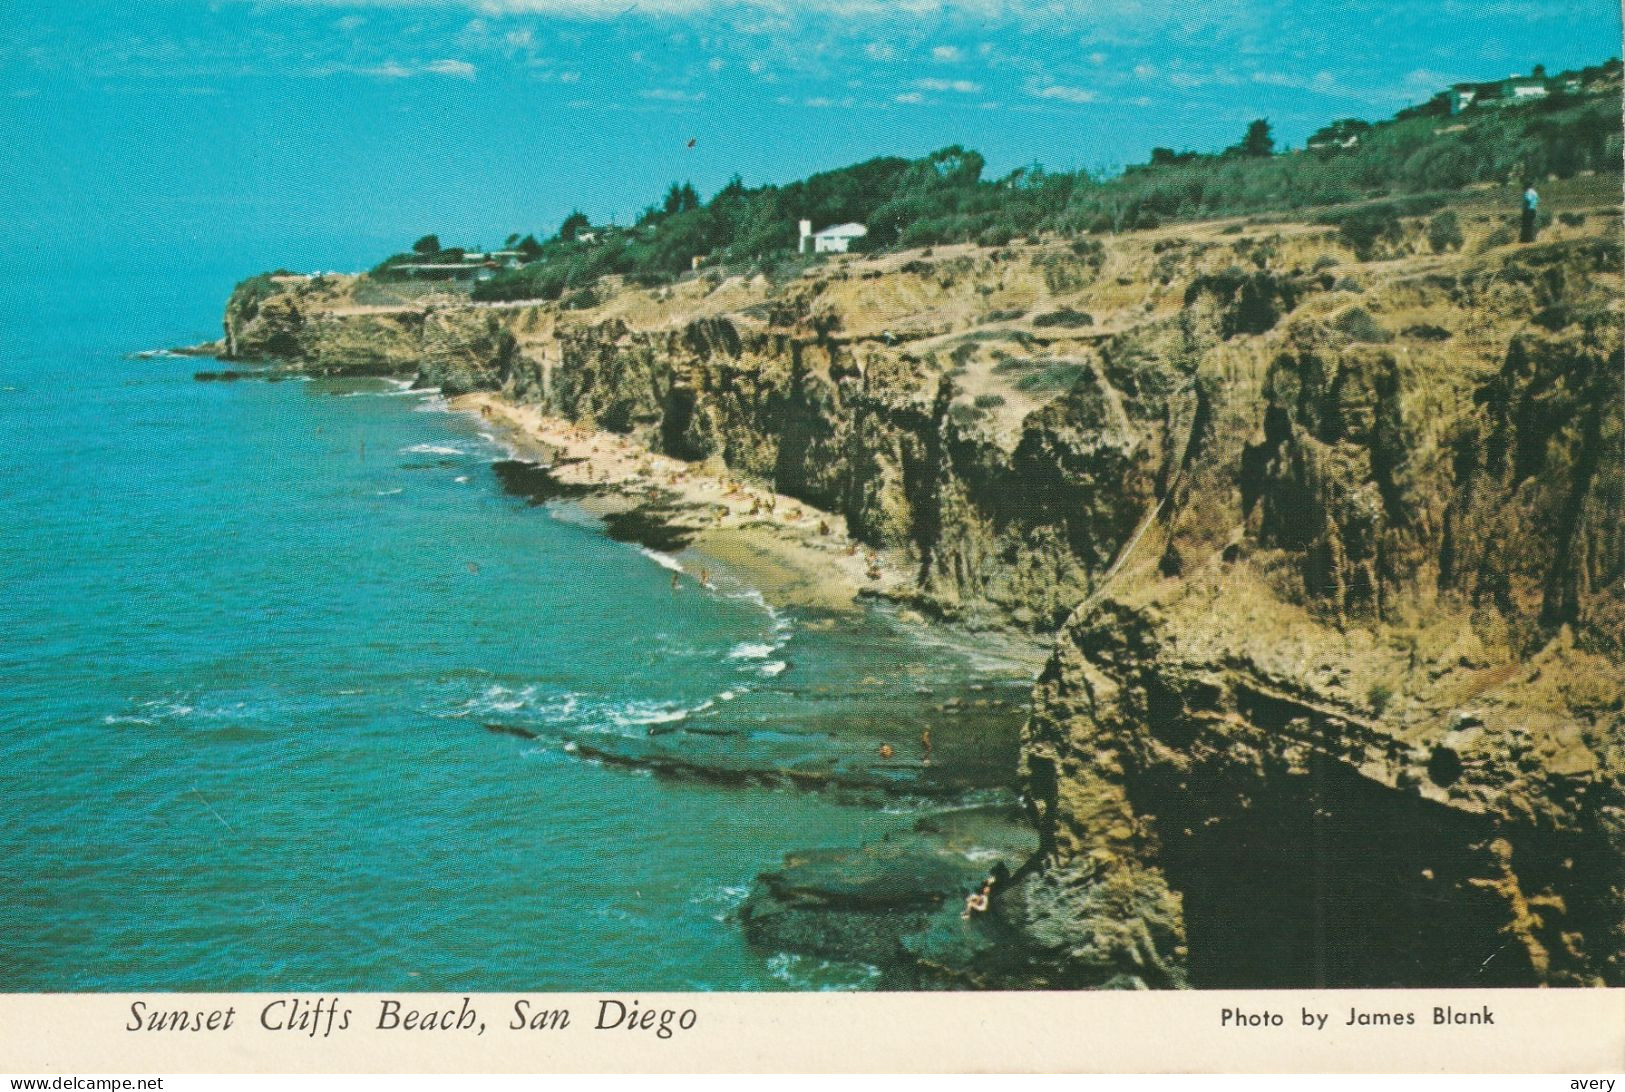 Sunset Cliffs Beach, San Diego - San Diego